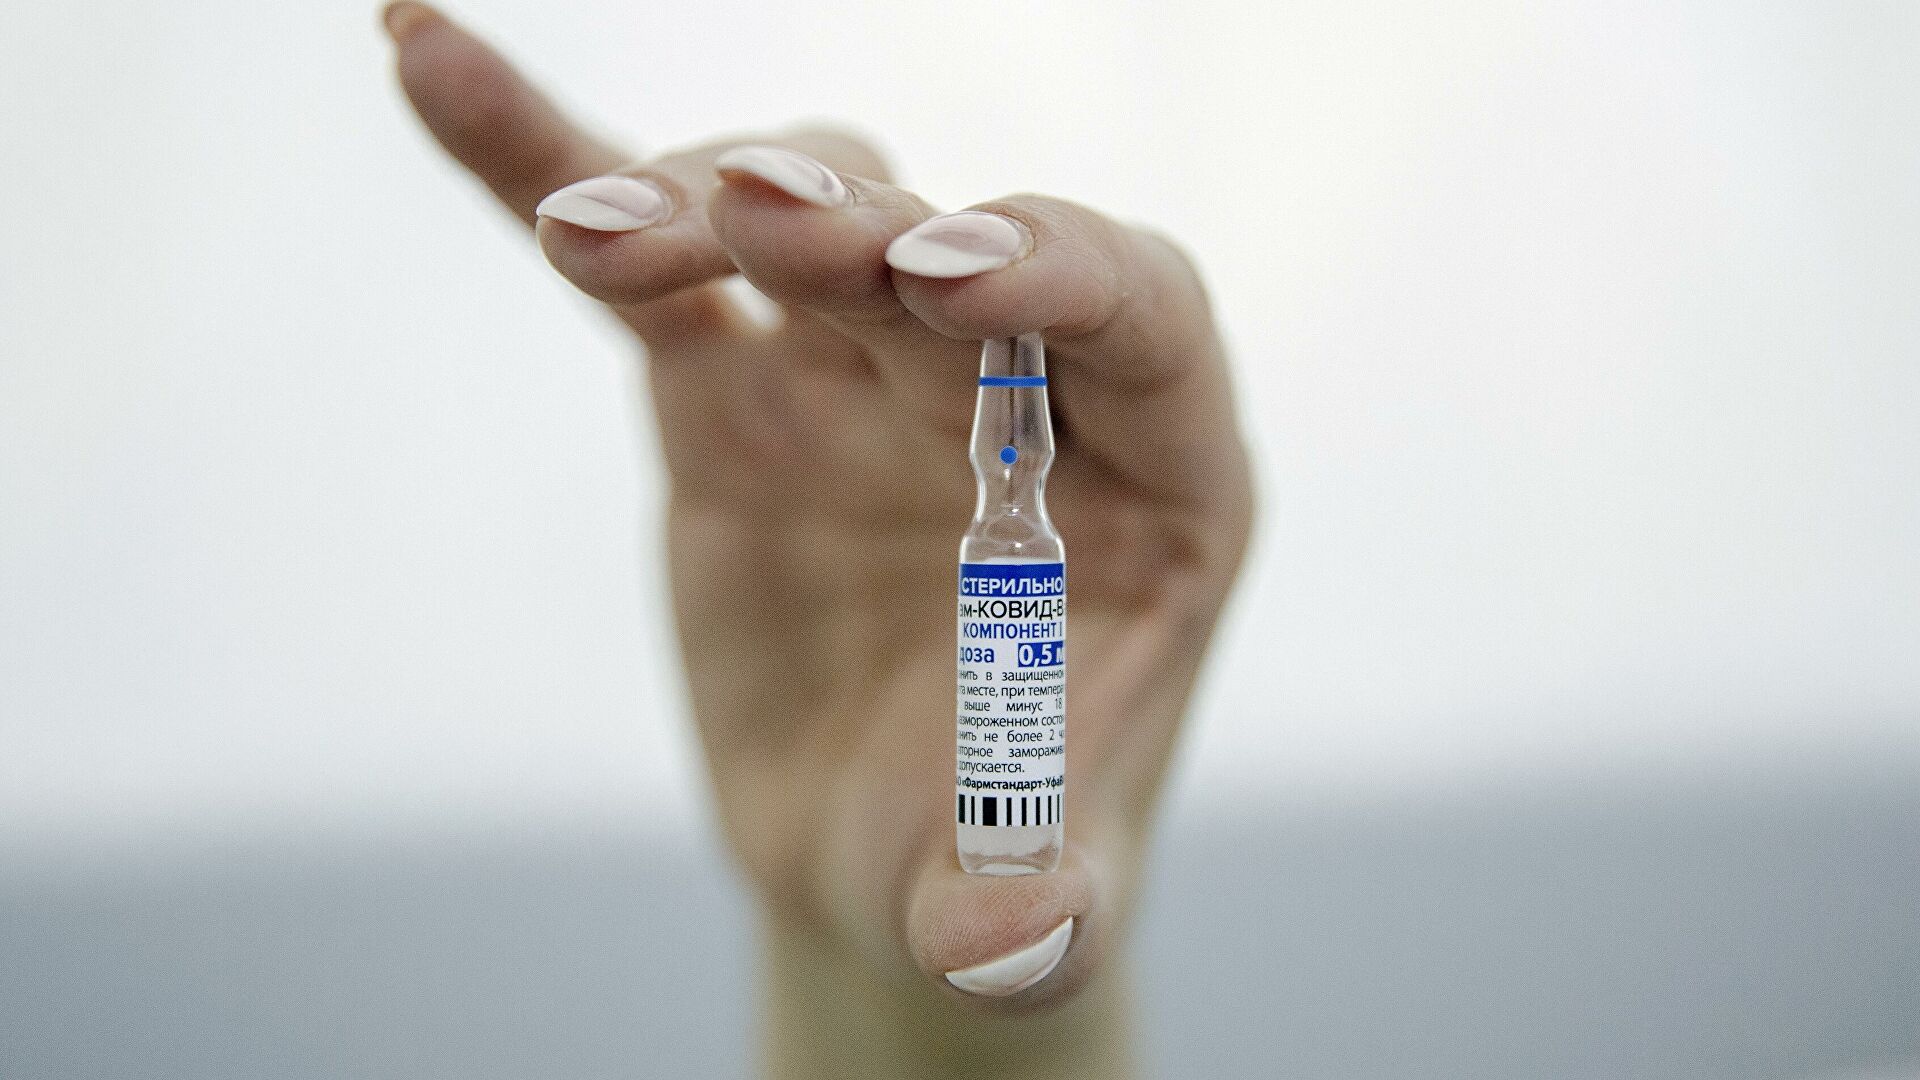 Сообщения о том, что вакцины от коронавируса в Узбекистане оплачиваются, опровергнуты